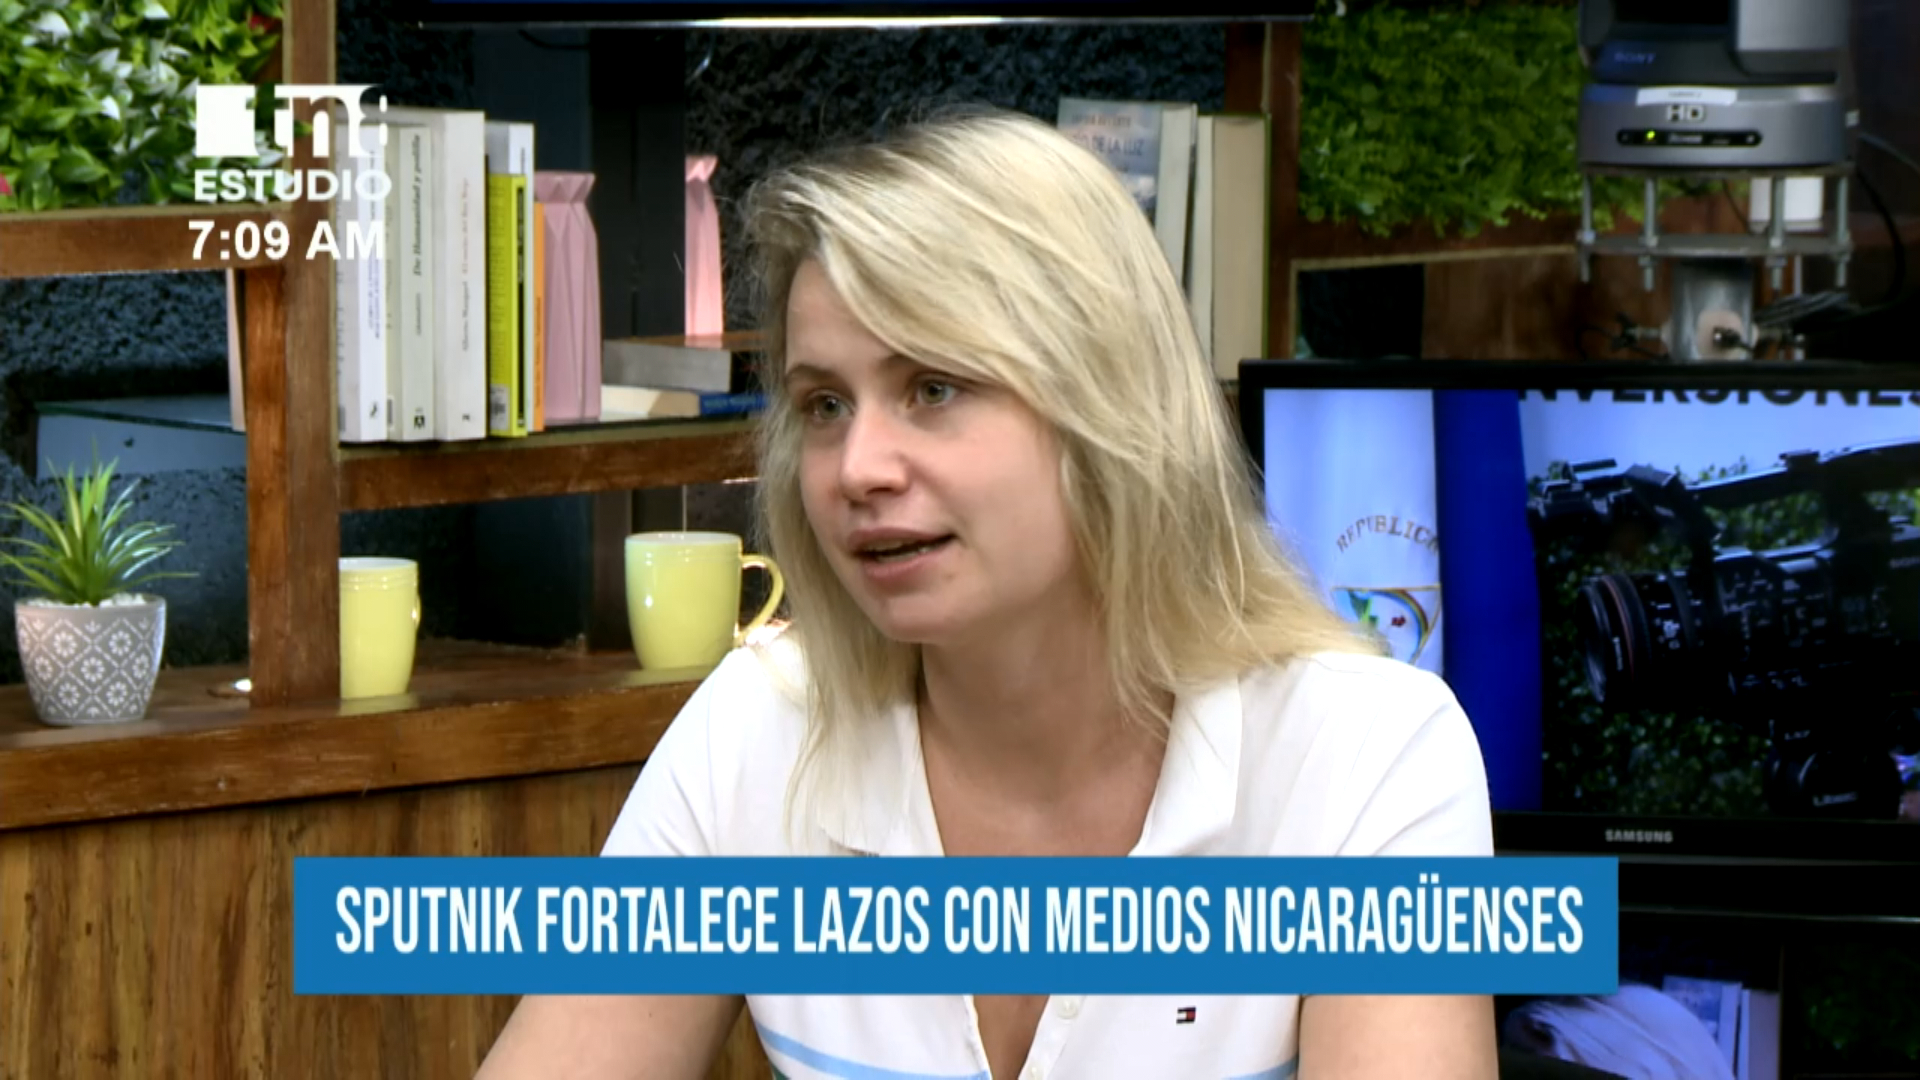 Cooperación entre los medios nicaragüenses y Sputnik